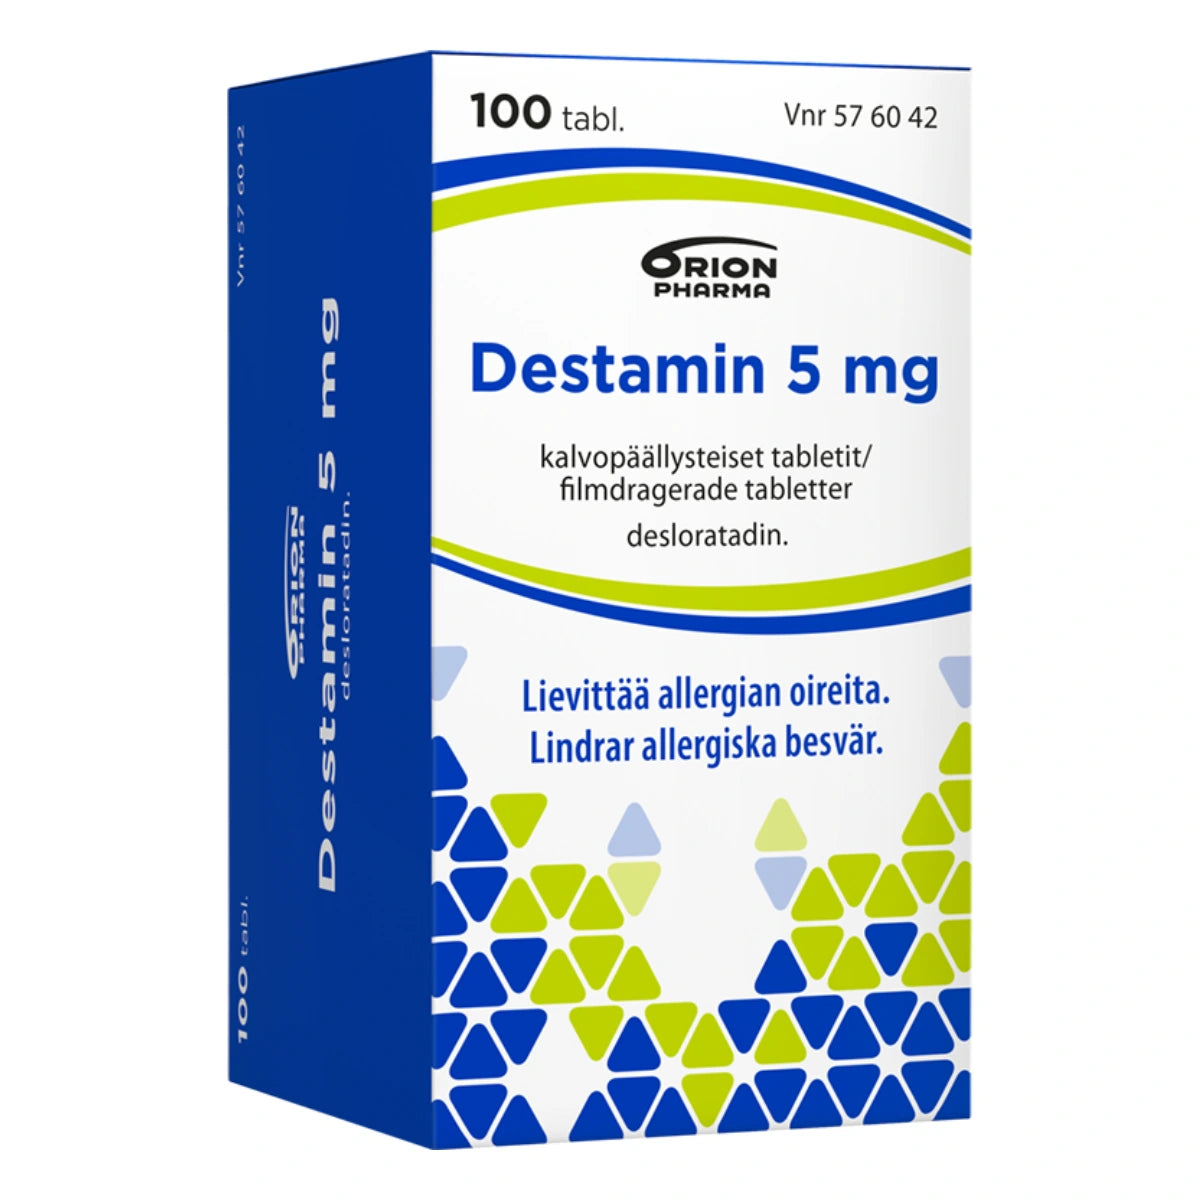 DESTAMIN 5 mg tabletti 100 kpl lievittää allergian oireita